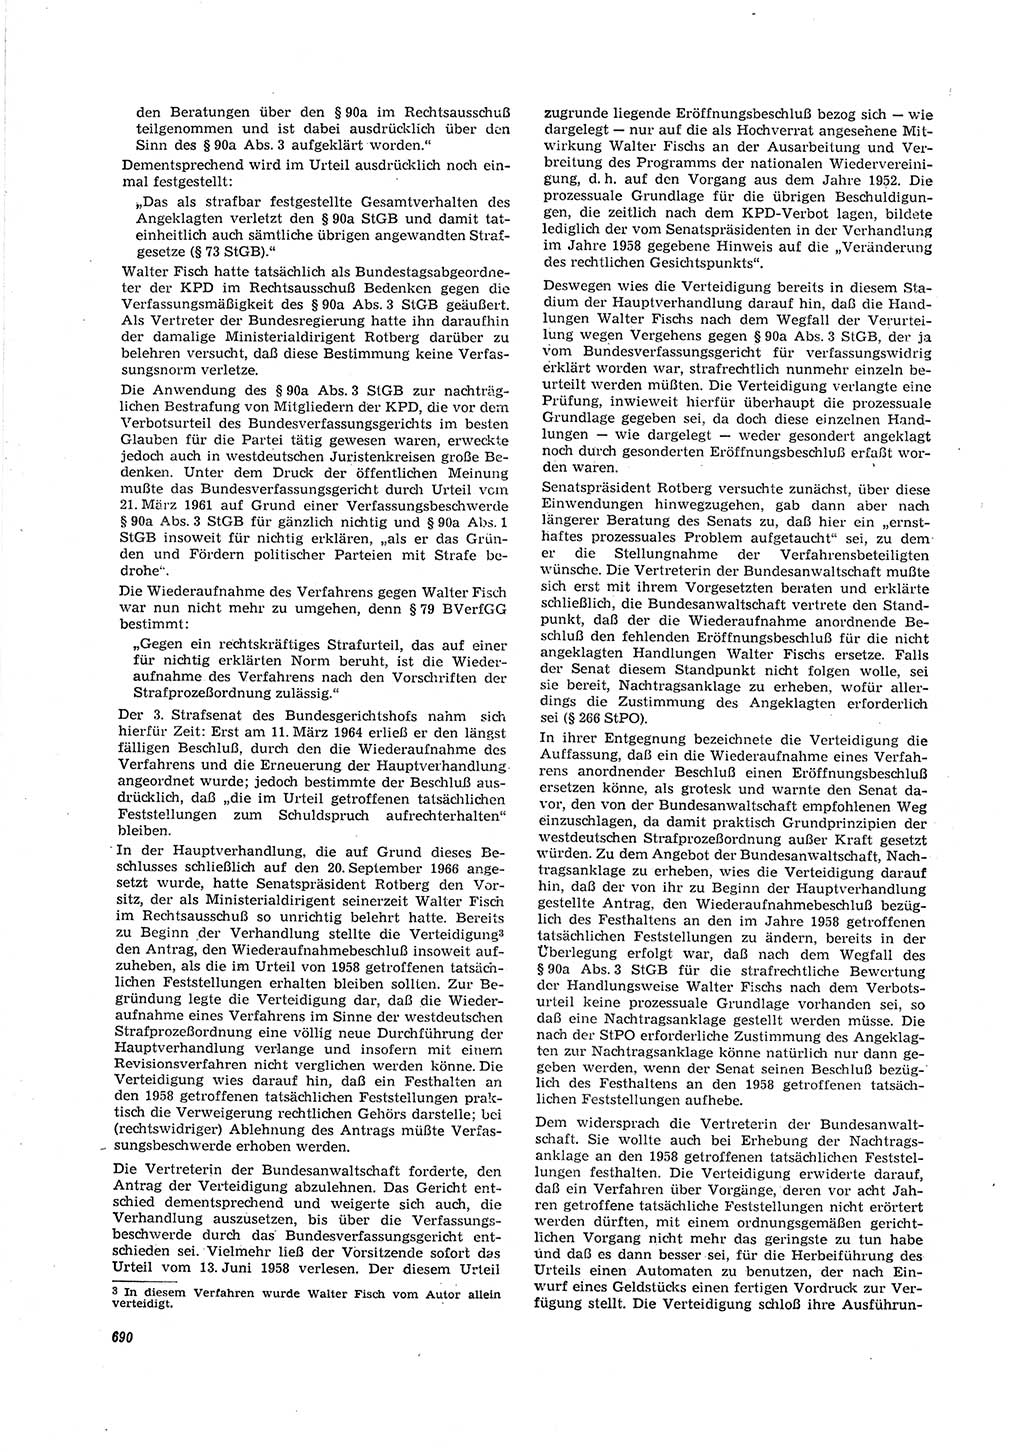 Neue Justiz (NJ), Zeitschrift für Recht und Rechtswissenschaft [Deutsche Demokratische Republik (DDR)], 20. Jahrgang 1966, Seite 690 (NJ DDR 1966, S. 690)